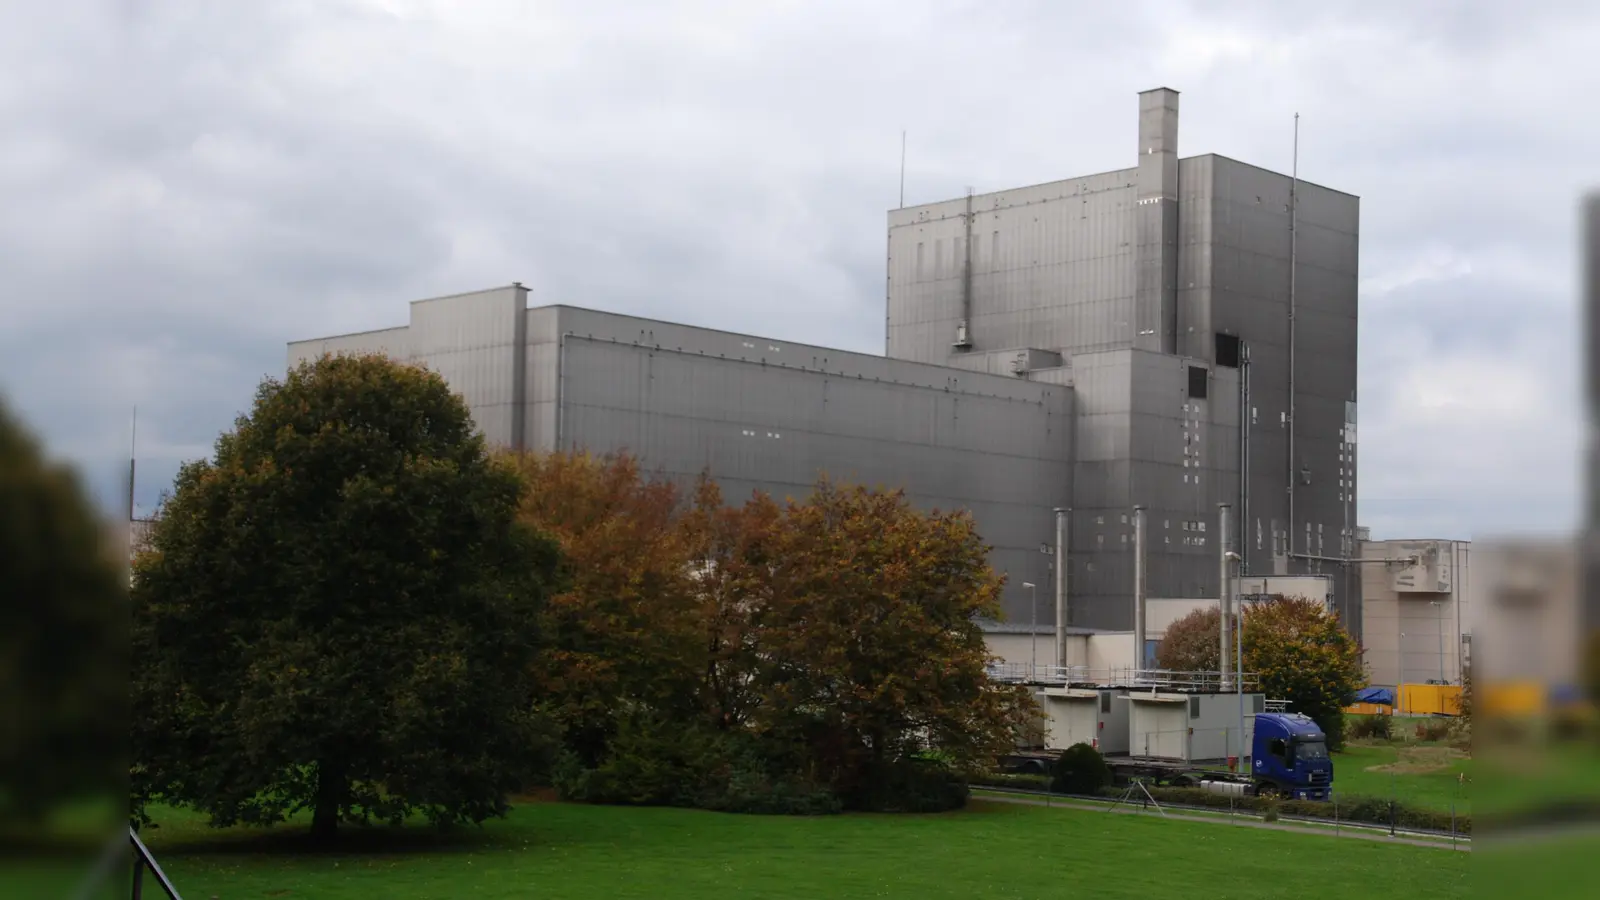 Das geplante Logisitiklager soll neben dem alten Kernkraftwerk angesiedelt werden. (Foto: Peter Vössing)